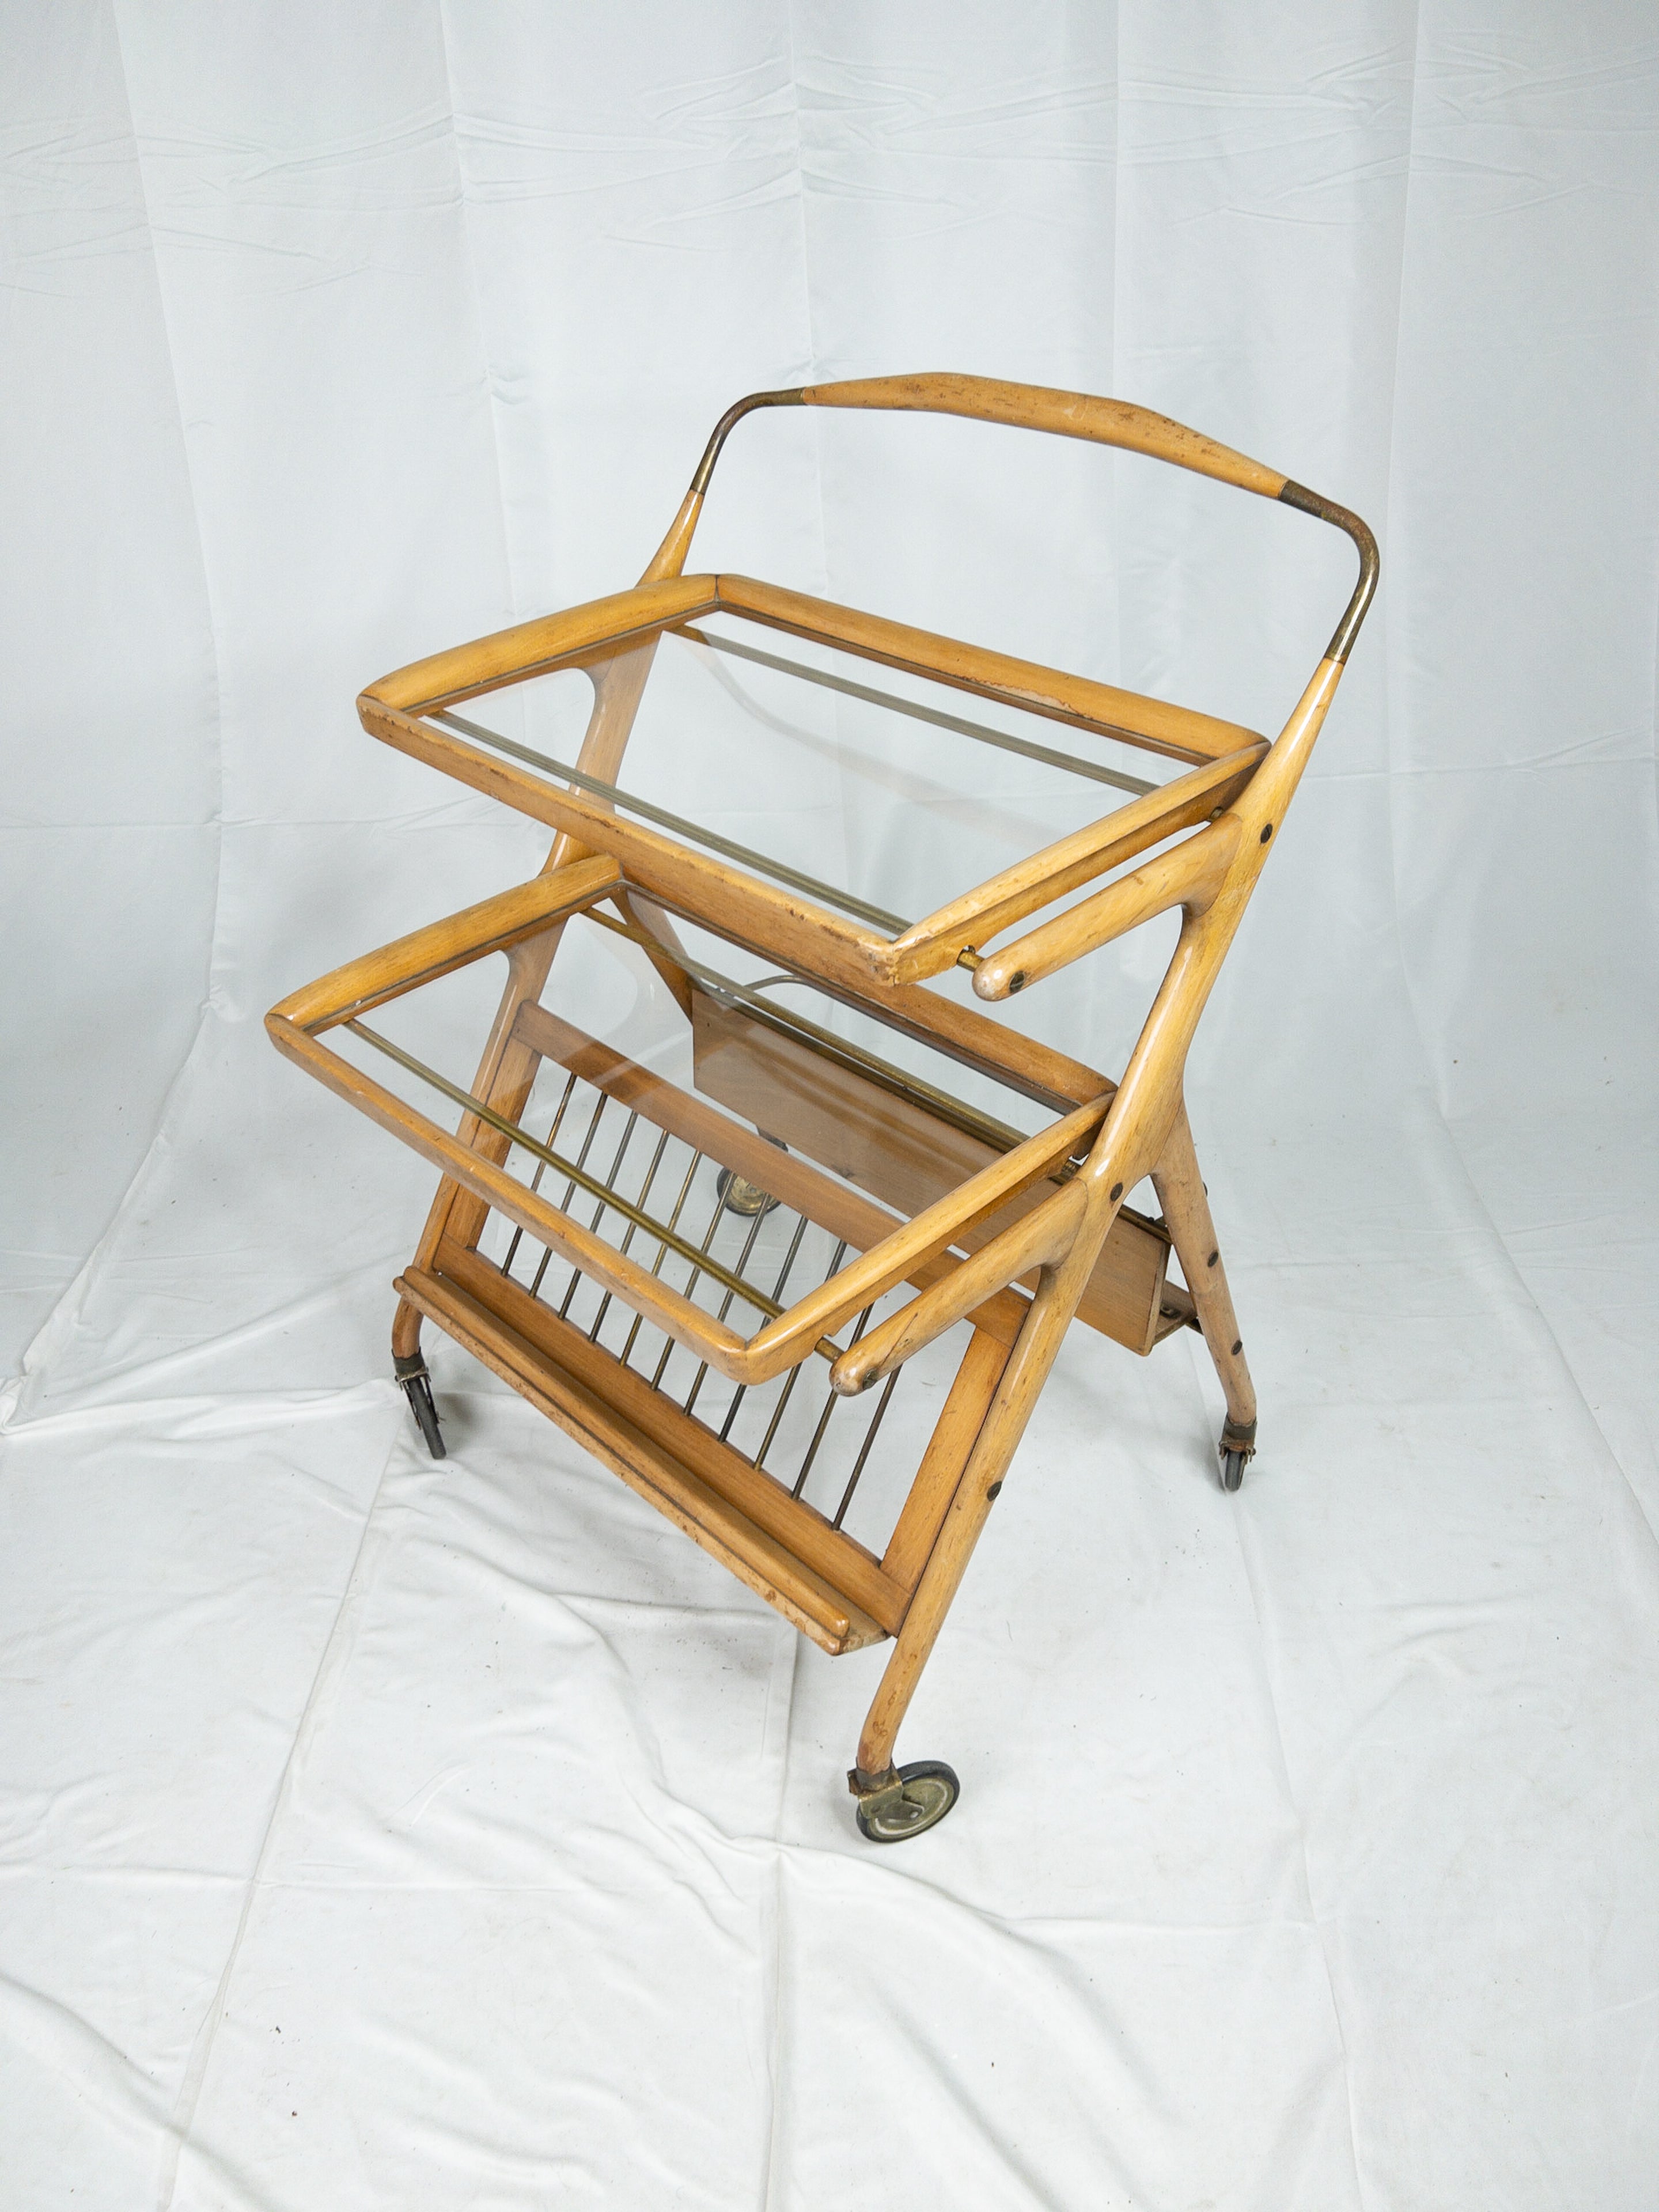 Le chariot de bar en bois pliable français des années 1960 incarne l'essence du design moderne du milieu du siècle avec son esthétique épurée et fonctionnelle. Fabriquée en bois riche et chaud, cette pièce exquise fusionne harmonieusement la forme